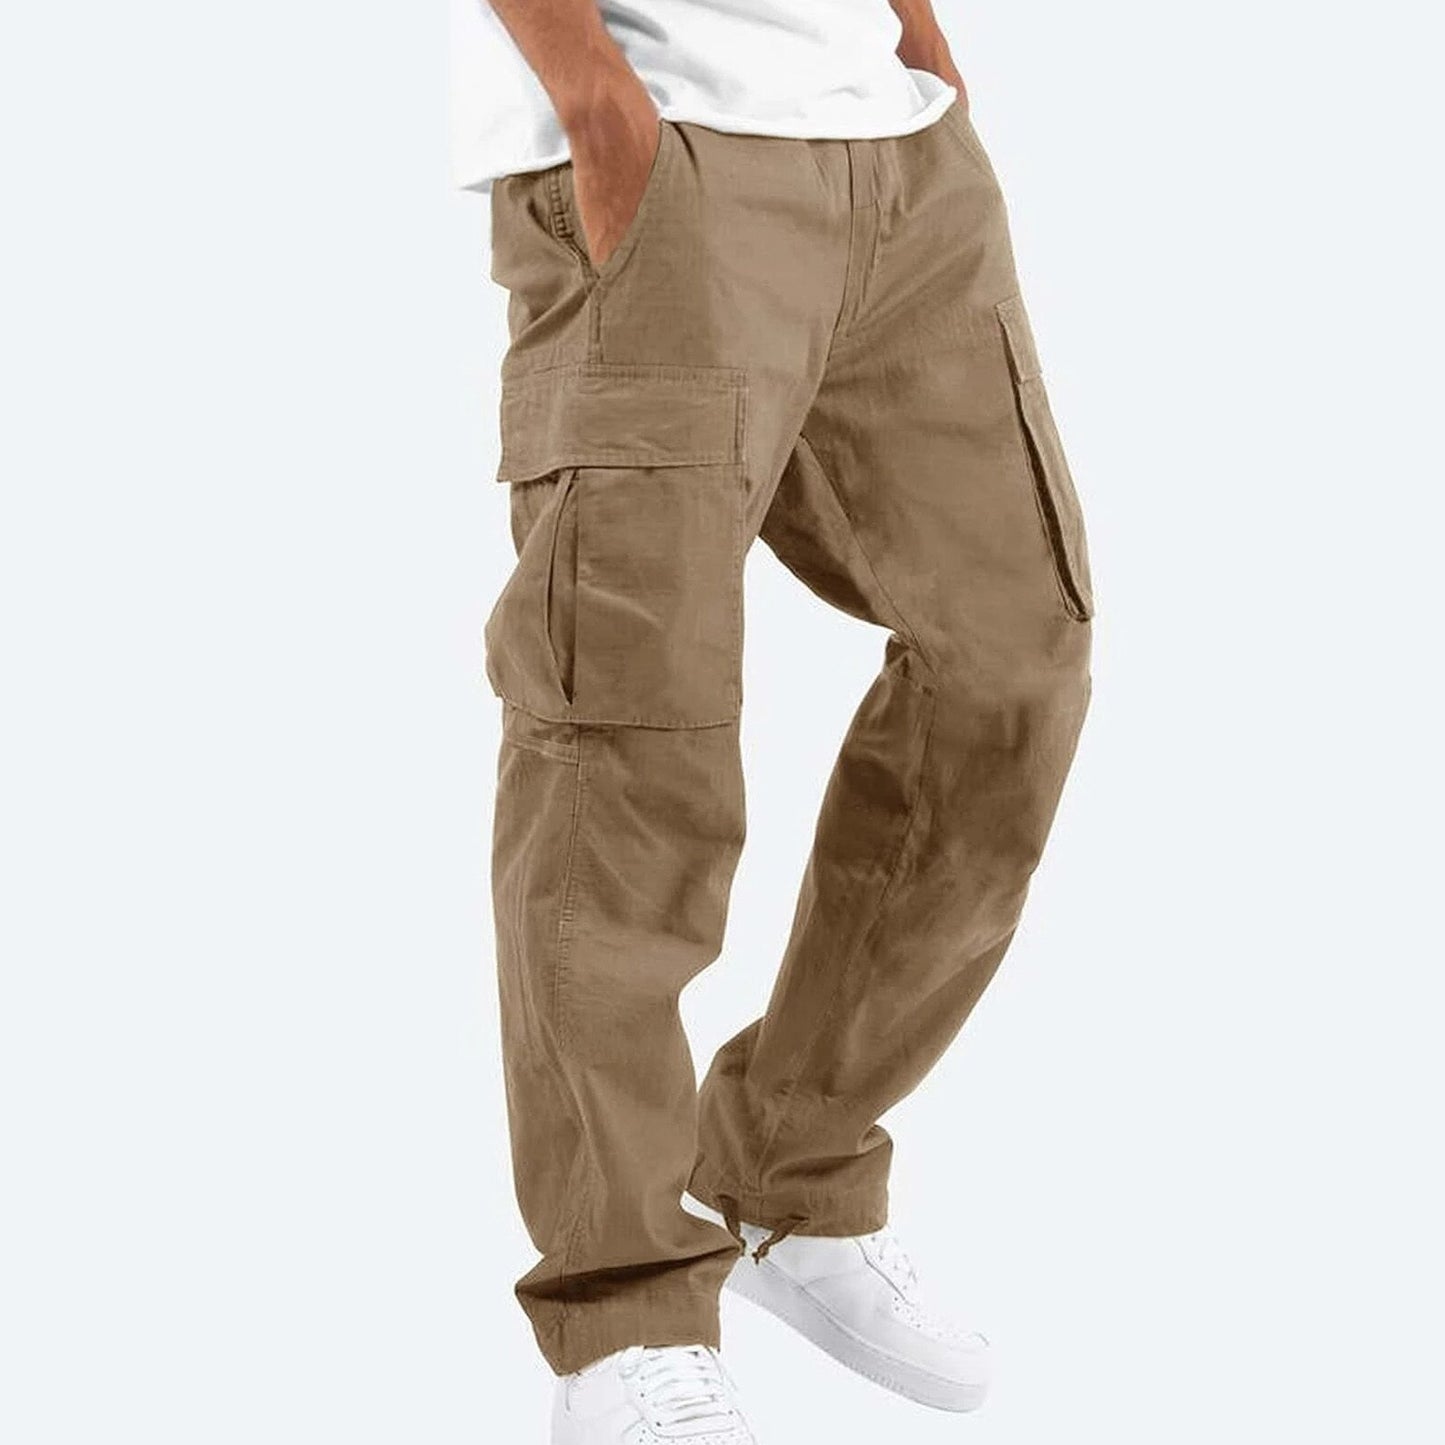 Men's Casual Cargo Pants